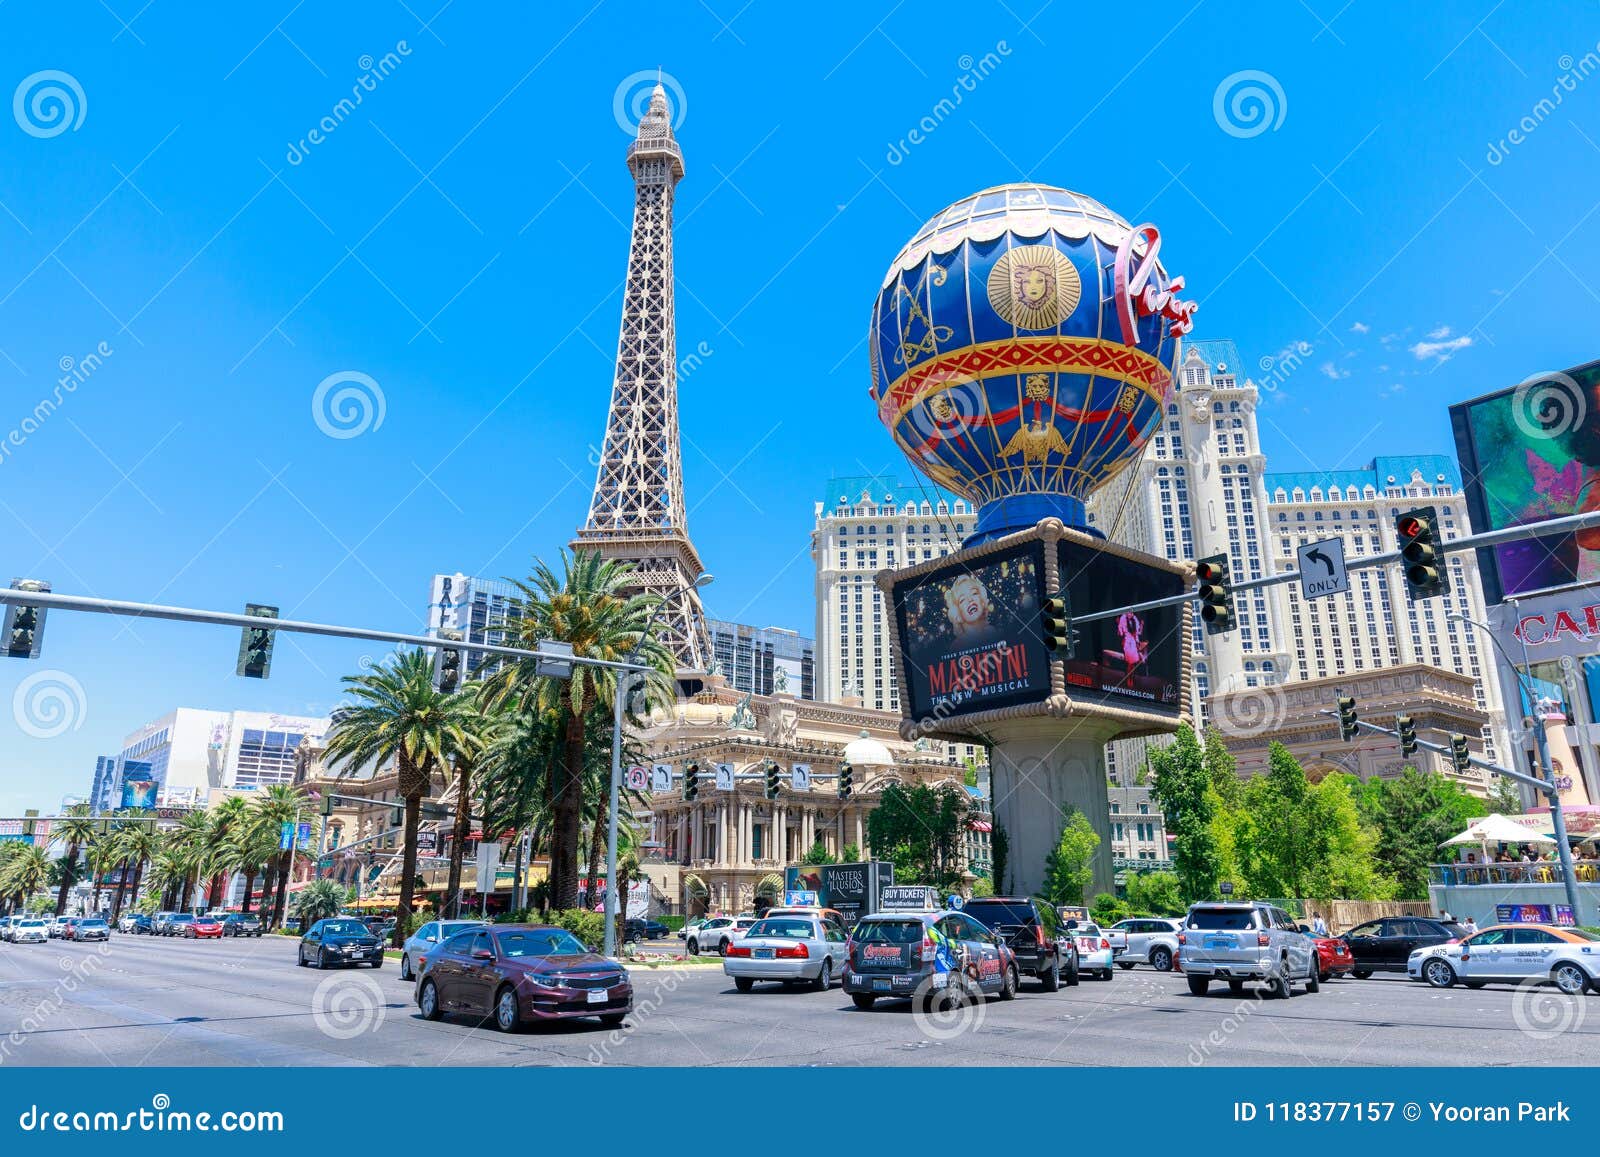 Paris, Las Vegas, Las Vegas - Book Tickets & Tours